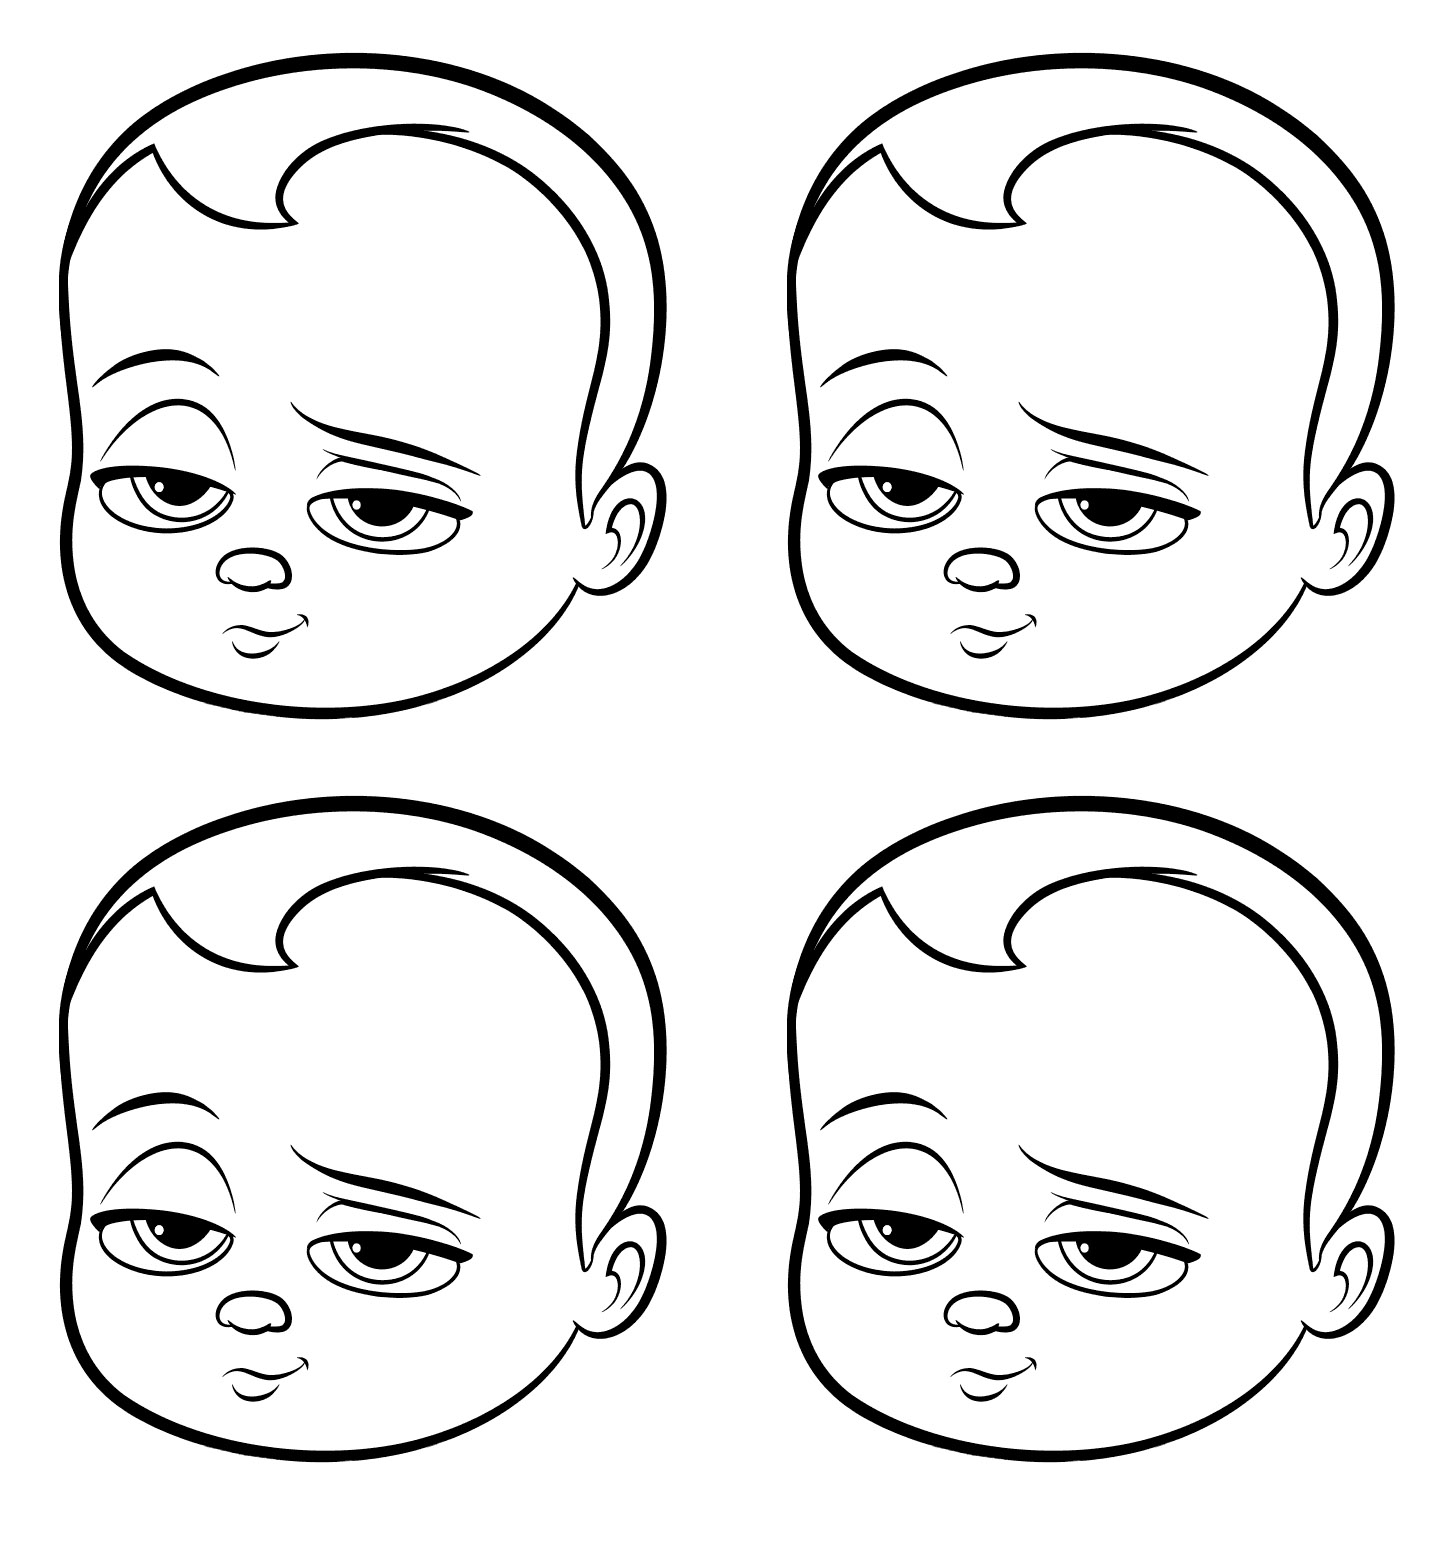 Dibujos para colorear de Baby Boss para imprimir